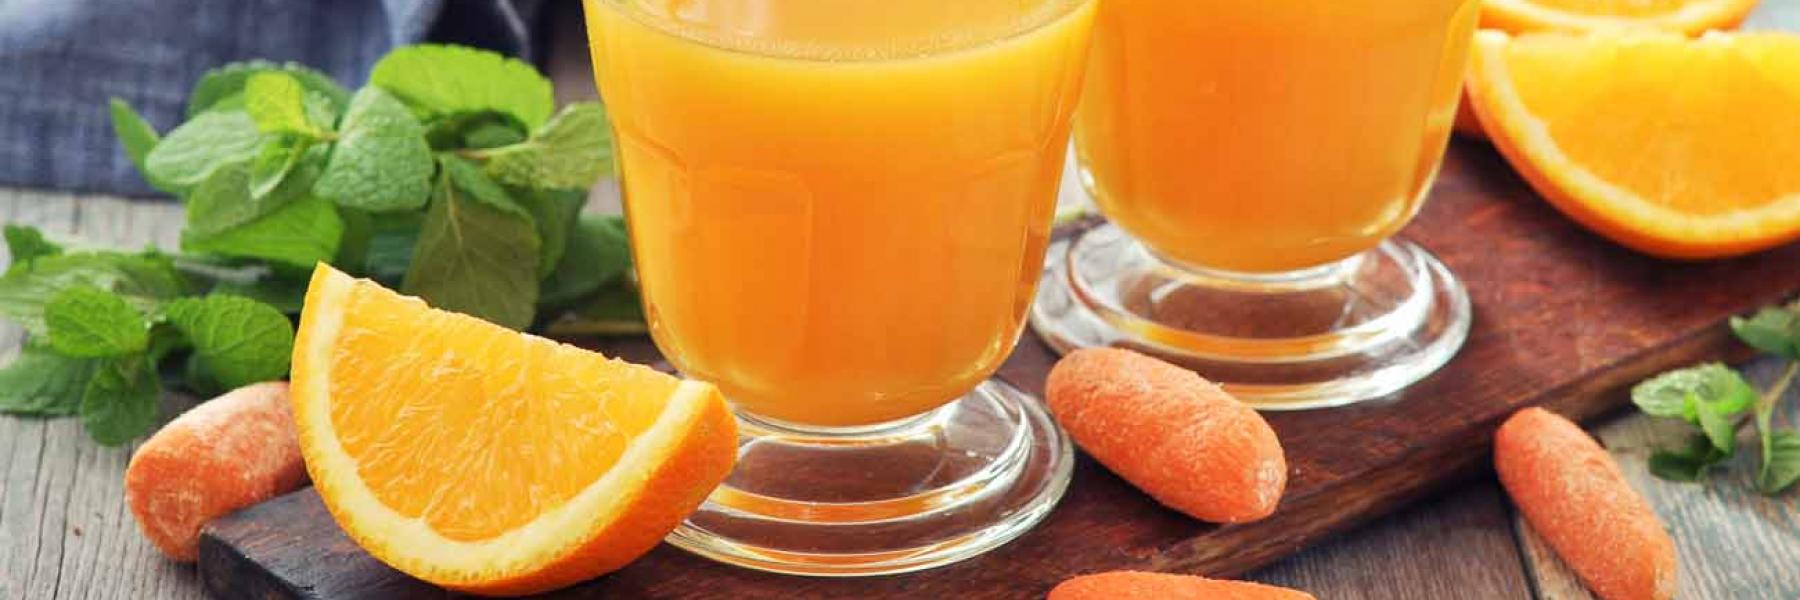 فوائد عصير الجزر والبرتقال